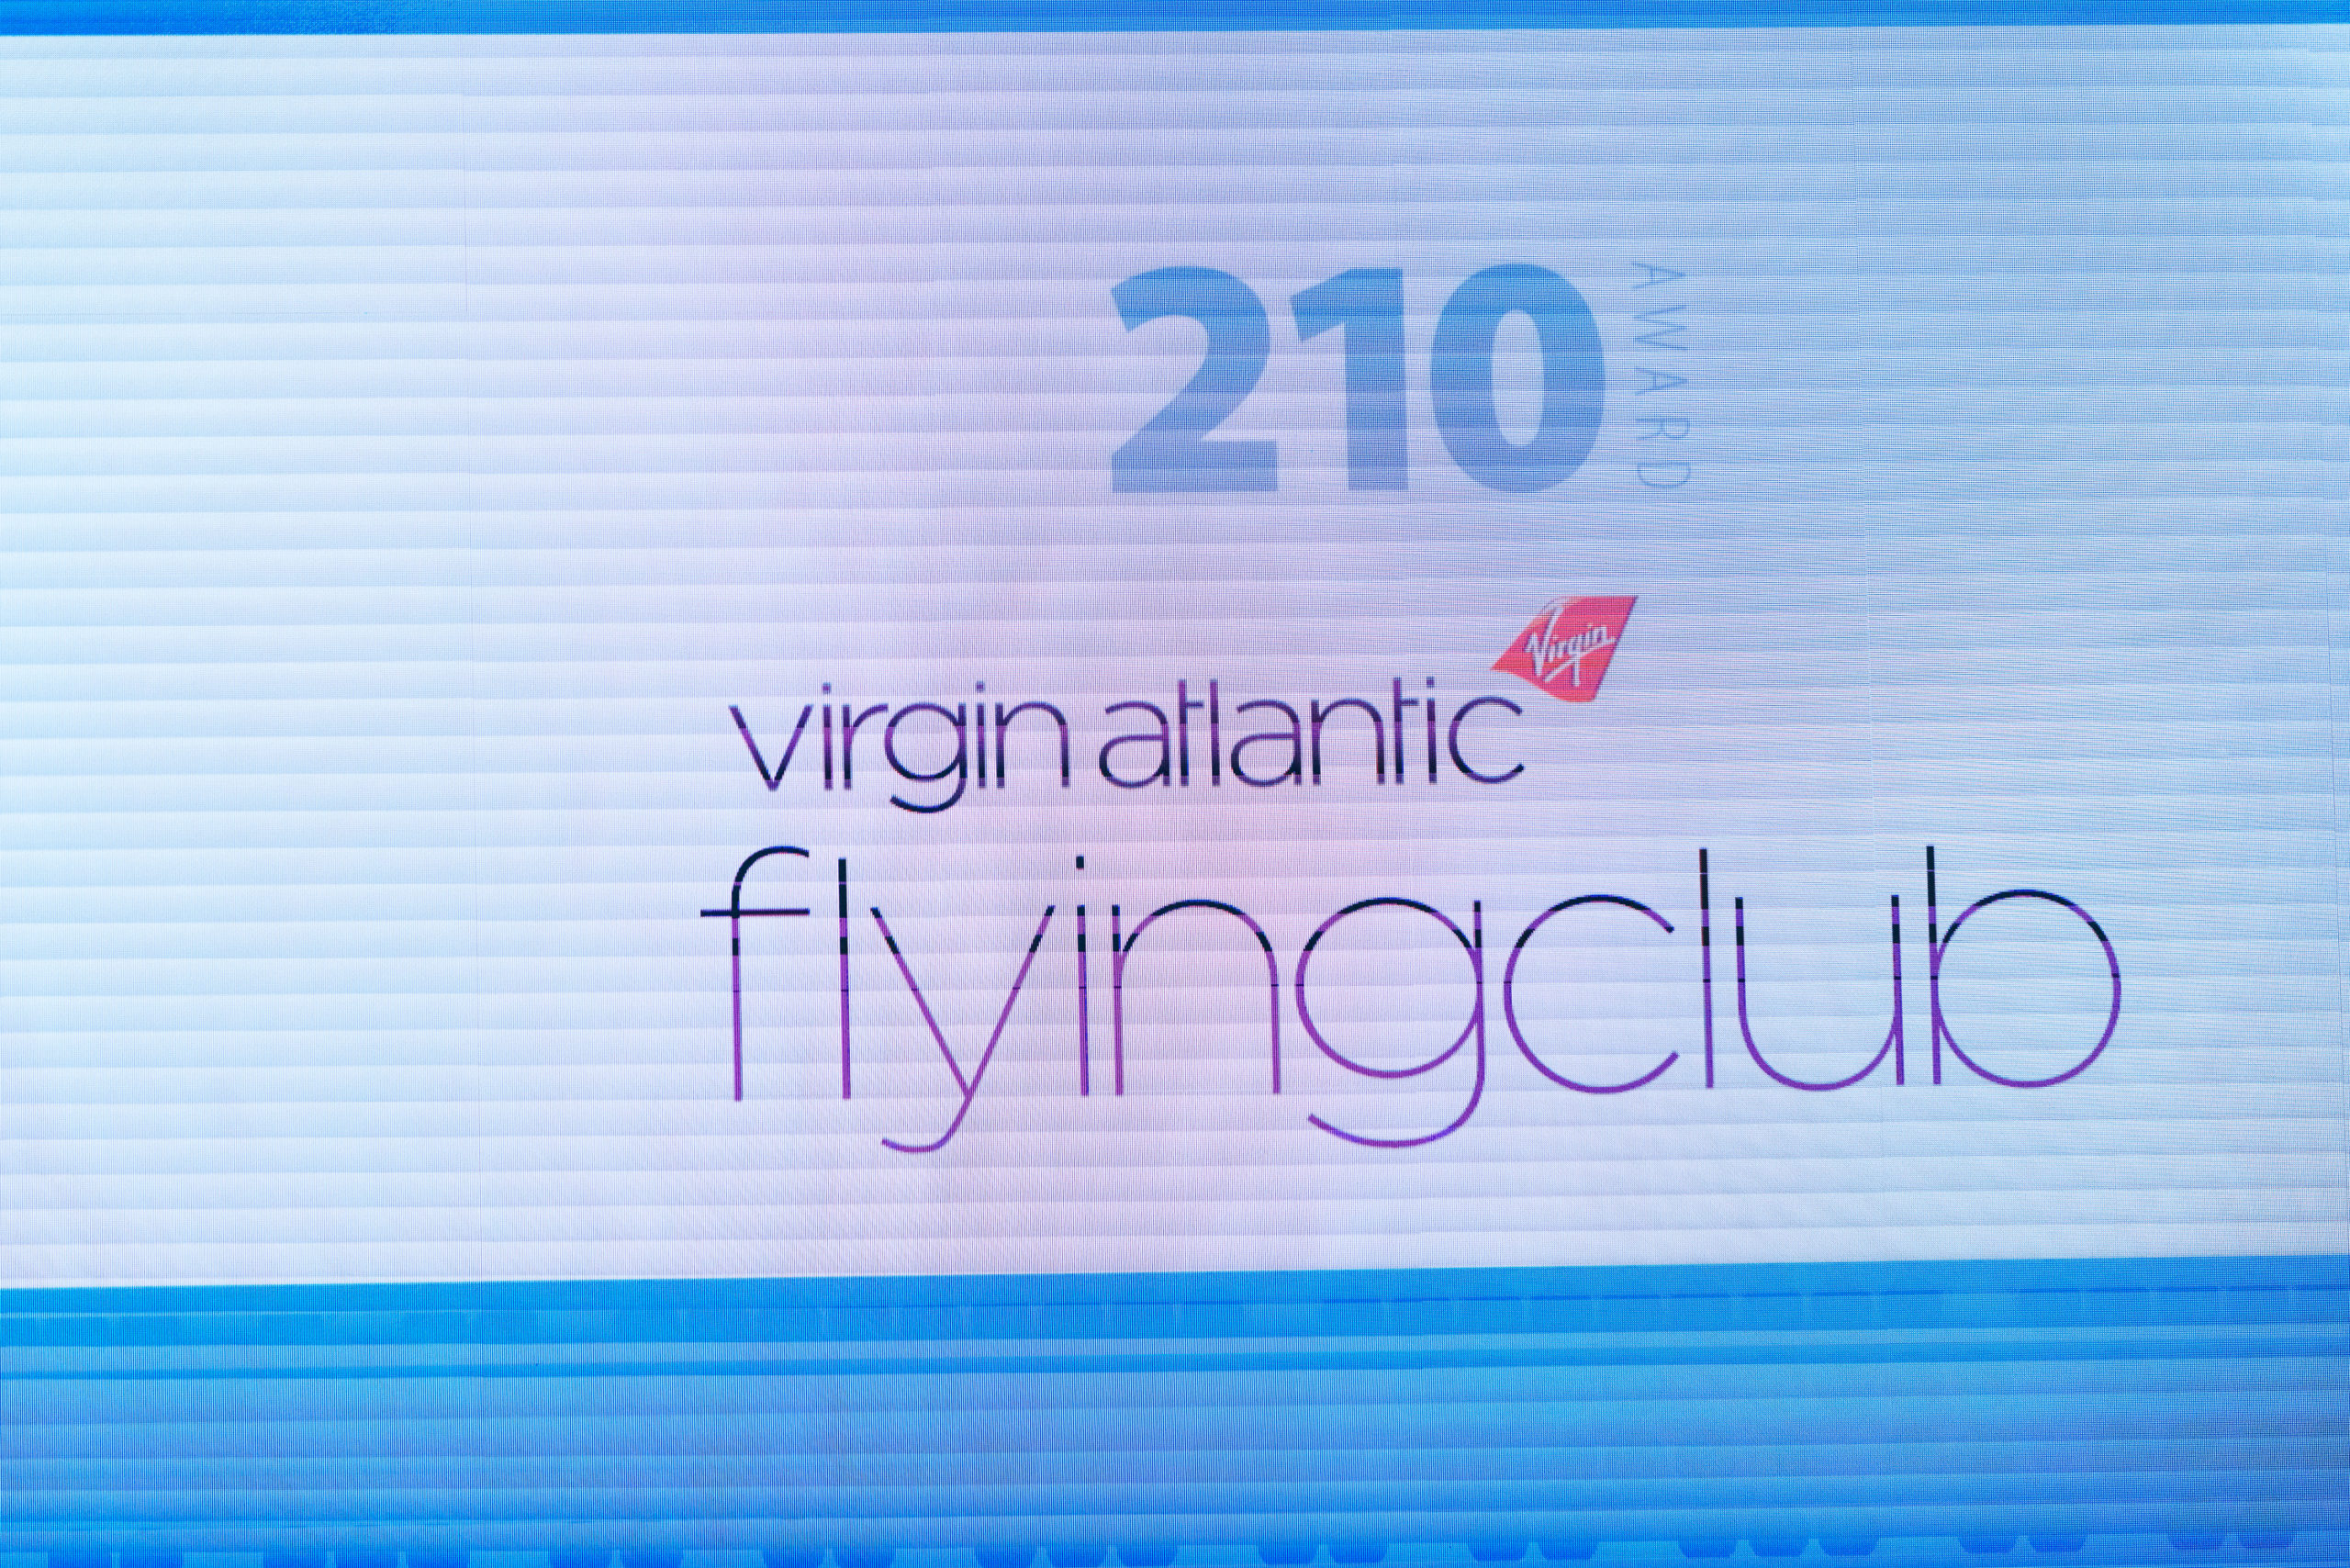 Virgin Atlantic 2101 Award